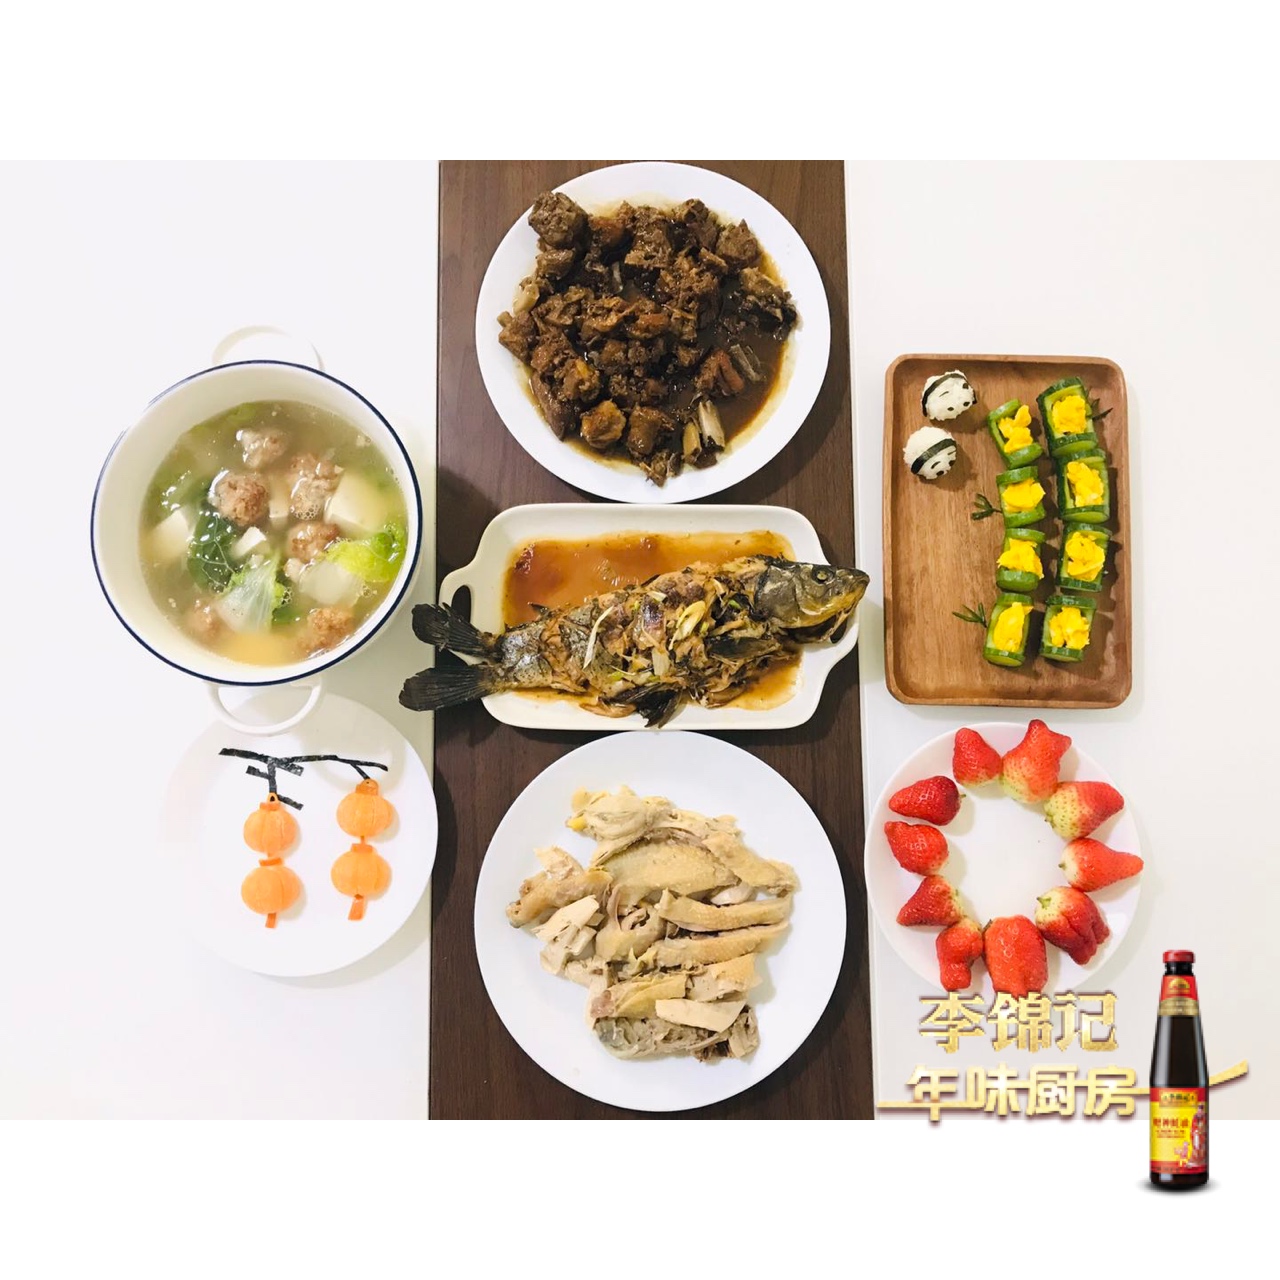 【年味】-节节登高-鸡胸肉沙拉&熊猫饭团